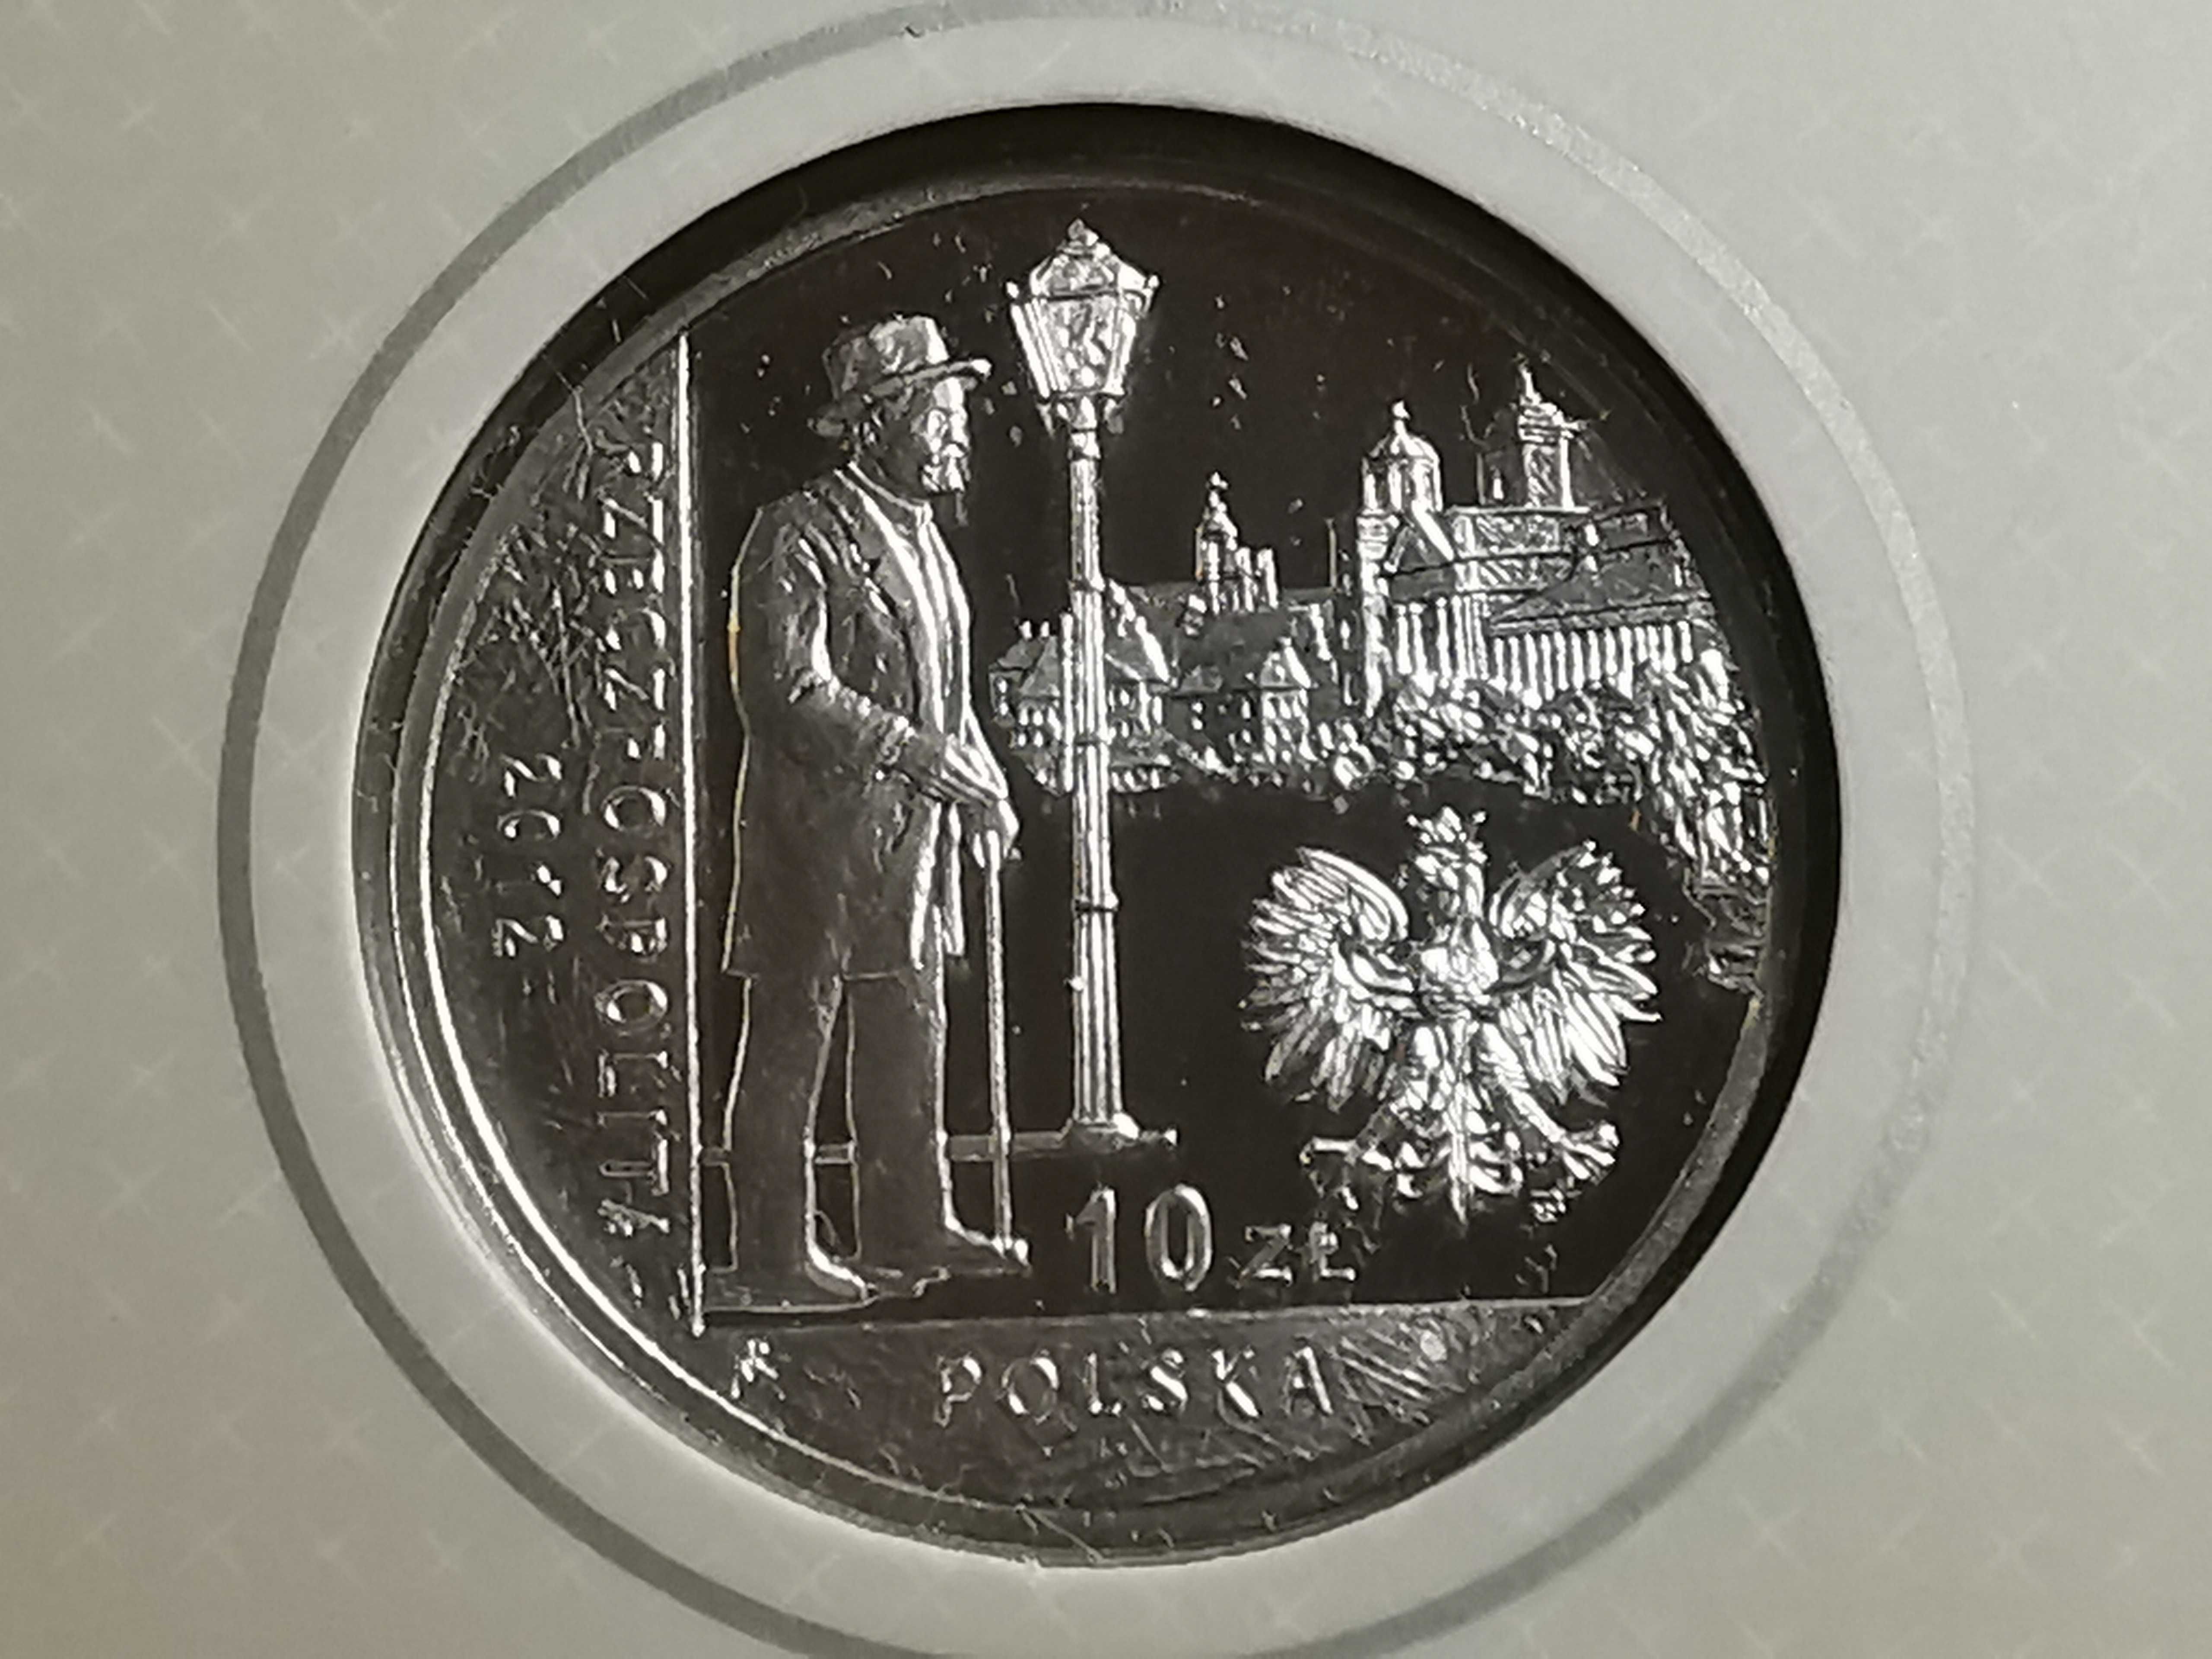 Moneta Bolesław Prus, Blister - Lustrzanka 10zł